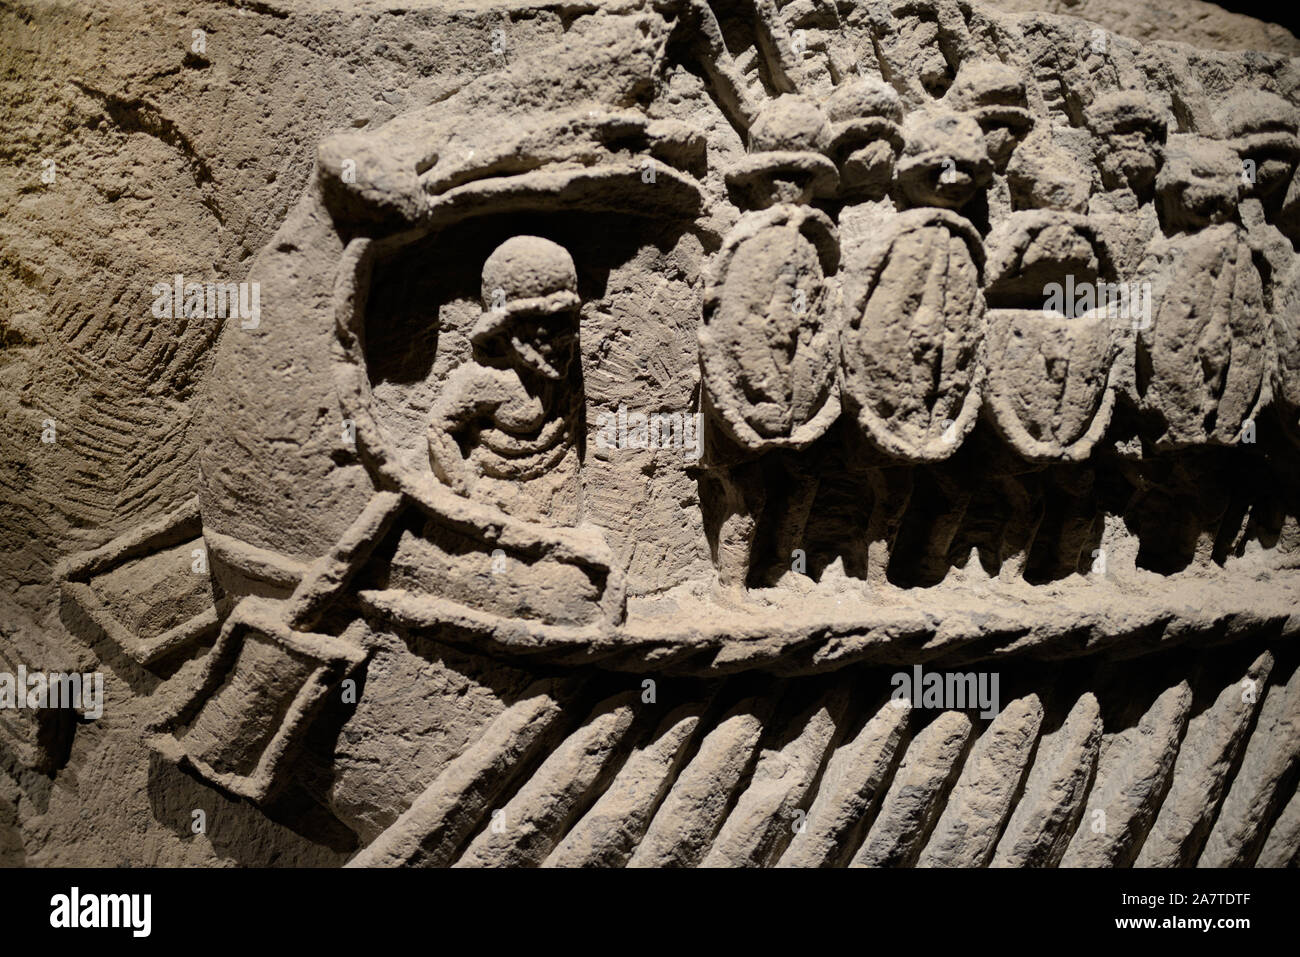 Roman rilievo marmoreo di corazzate romana o navi e soldati romani BC 200-30 (Pompei Italia) Foto Stock